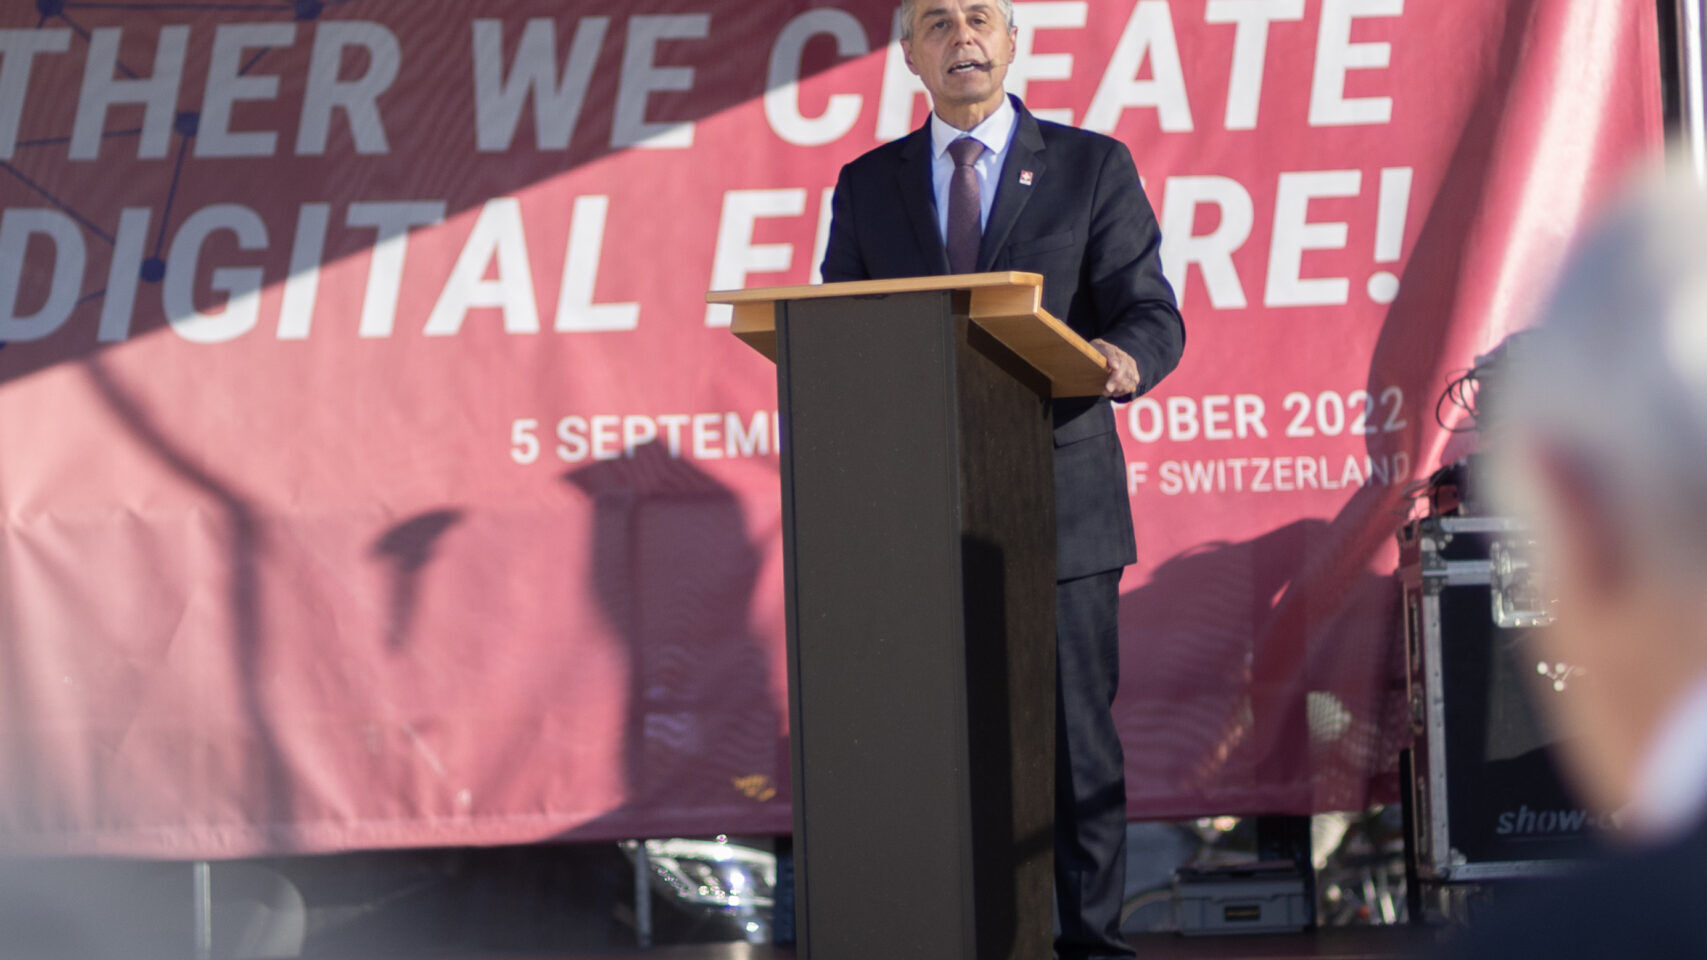 'Swiss Digital Journals' 2022 blev indviet i Bern den 5. september Præsidenten for det schweiziske forbund, Ignazio Cassis, deltog i begivenheden og holdt en tale